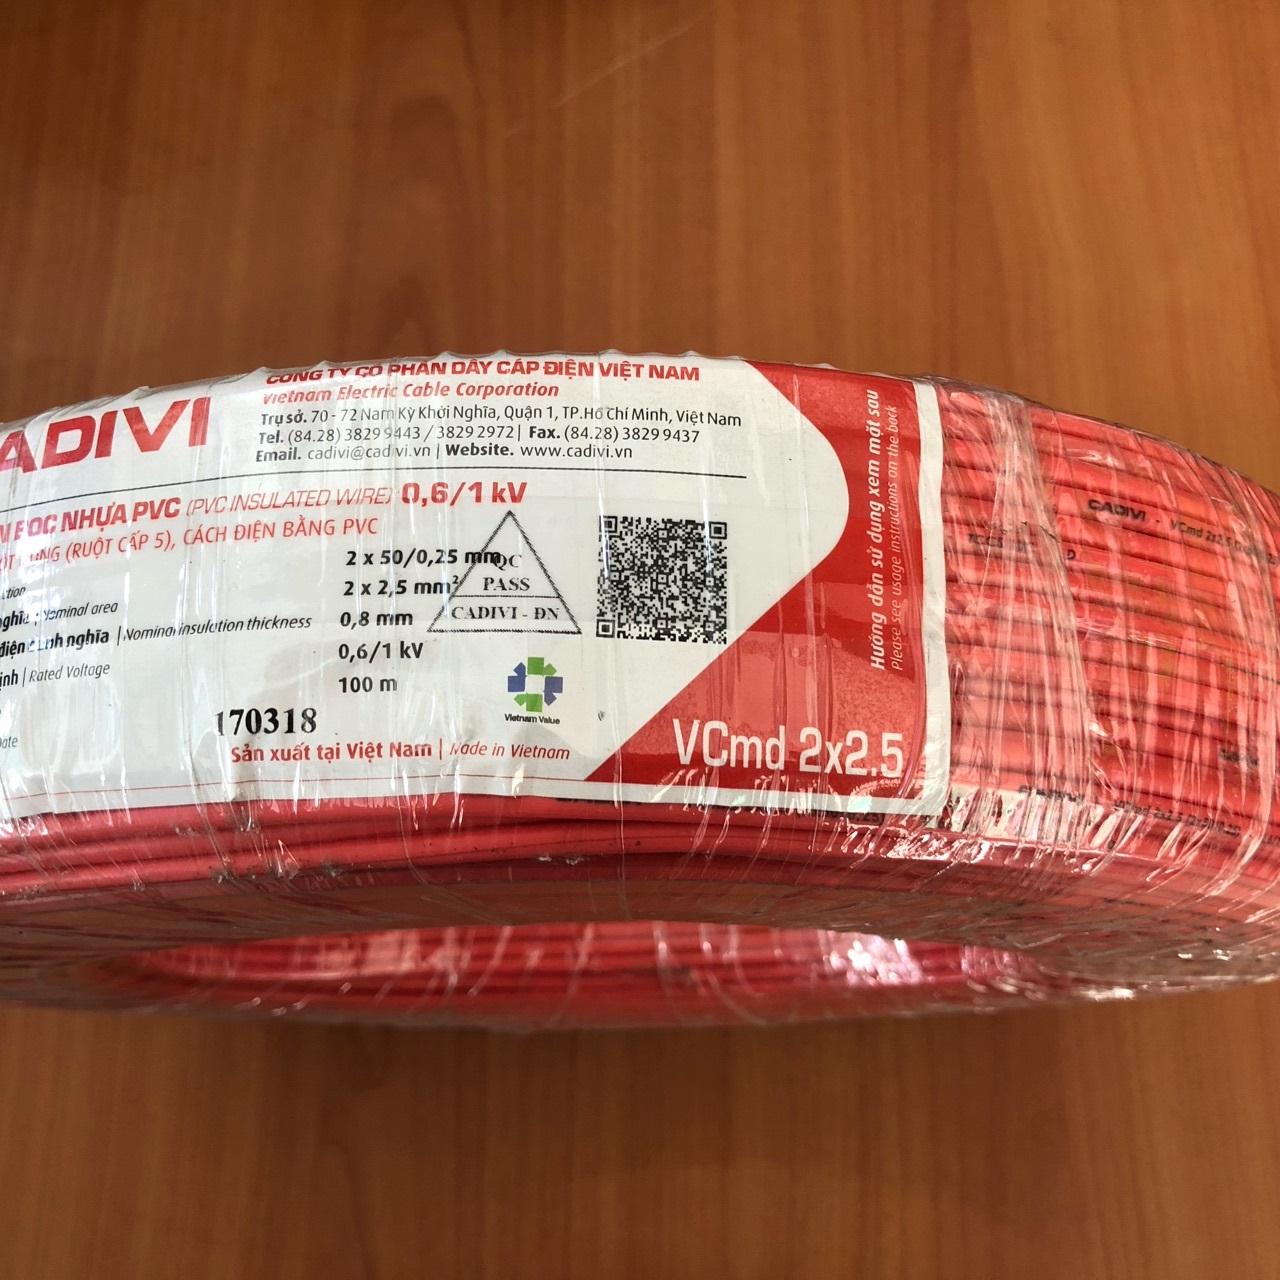 Dây điện Cadivi VCMD 2x2.5 màu đỏ, 0.6/1KV, cuộn 100m, giá theo mét